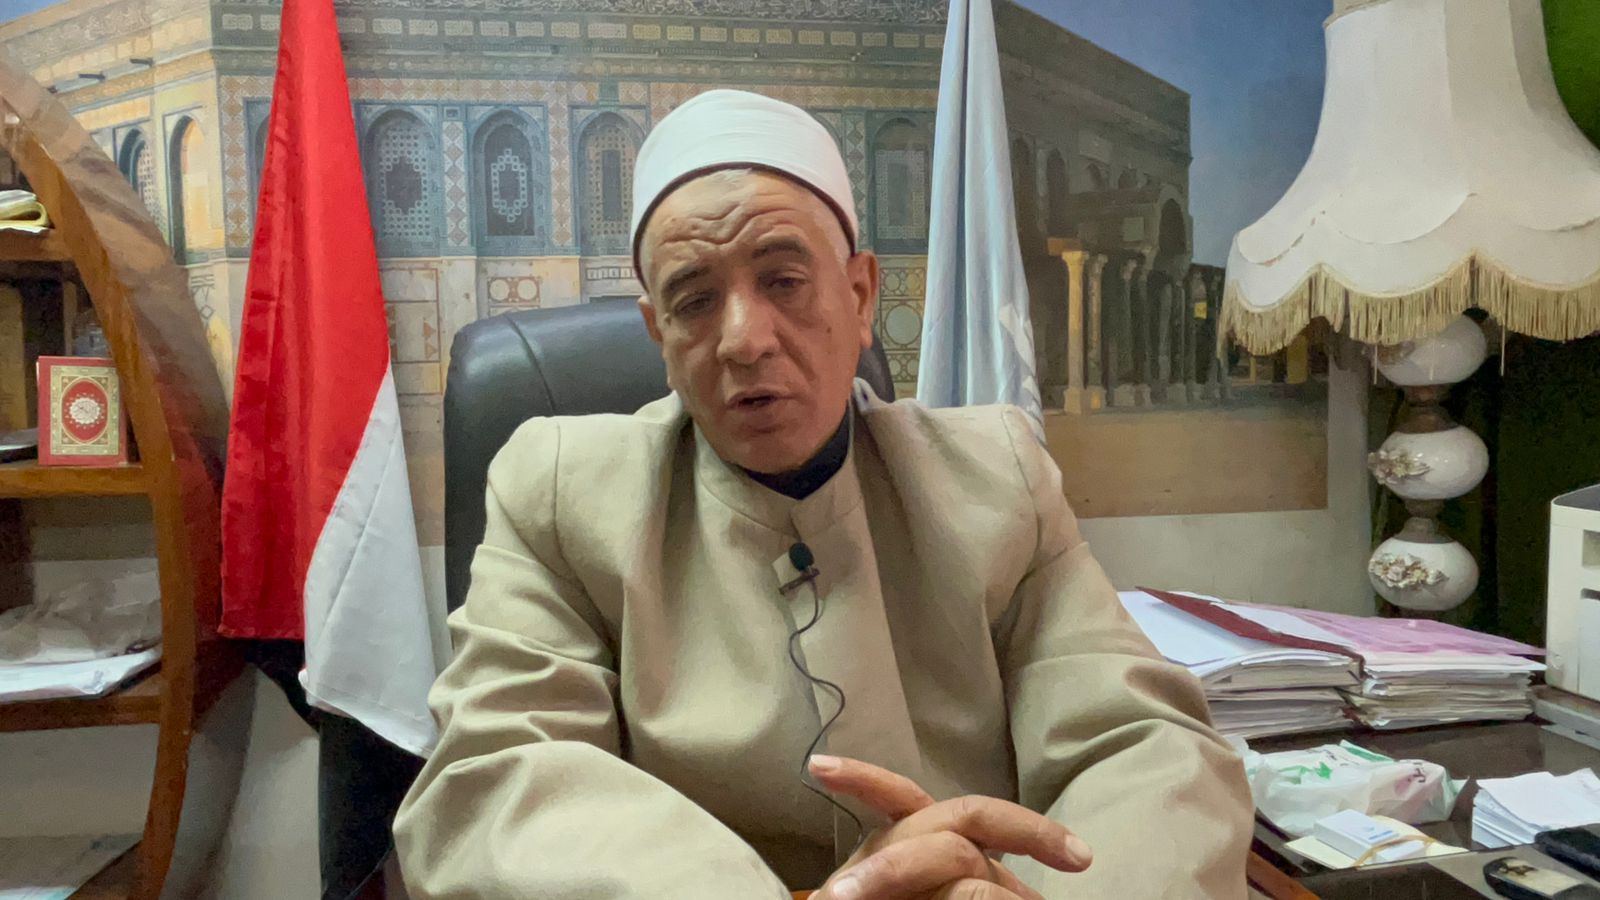 وكيل وزارة الأوقاف بالإسكندرية يكشف لـ"بوابة الأهرام" استعدادات استقبال رمضان | صور وفيديو 